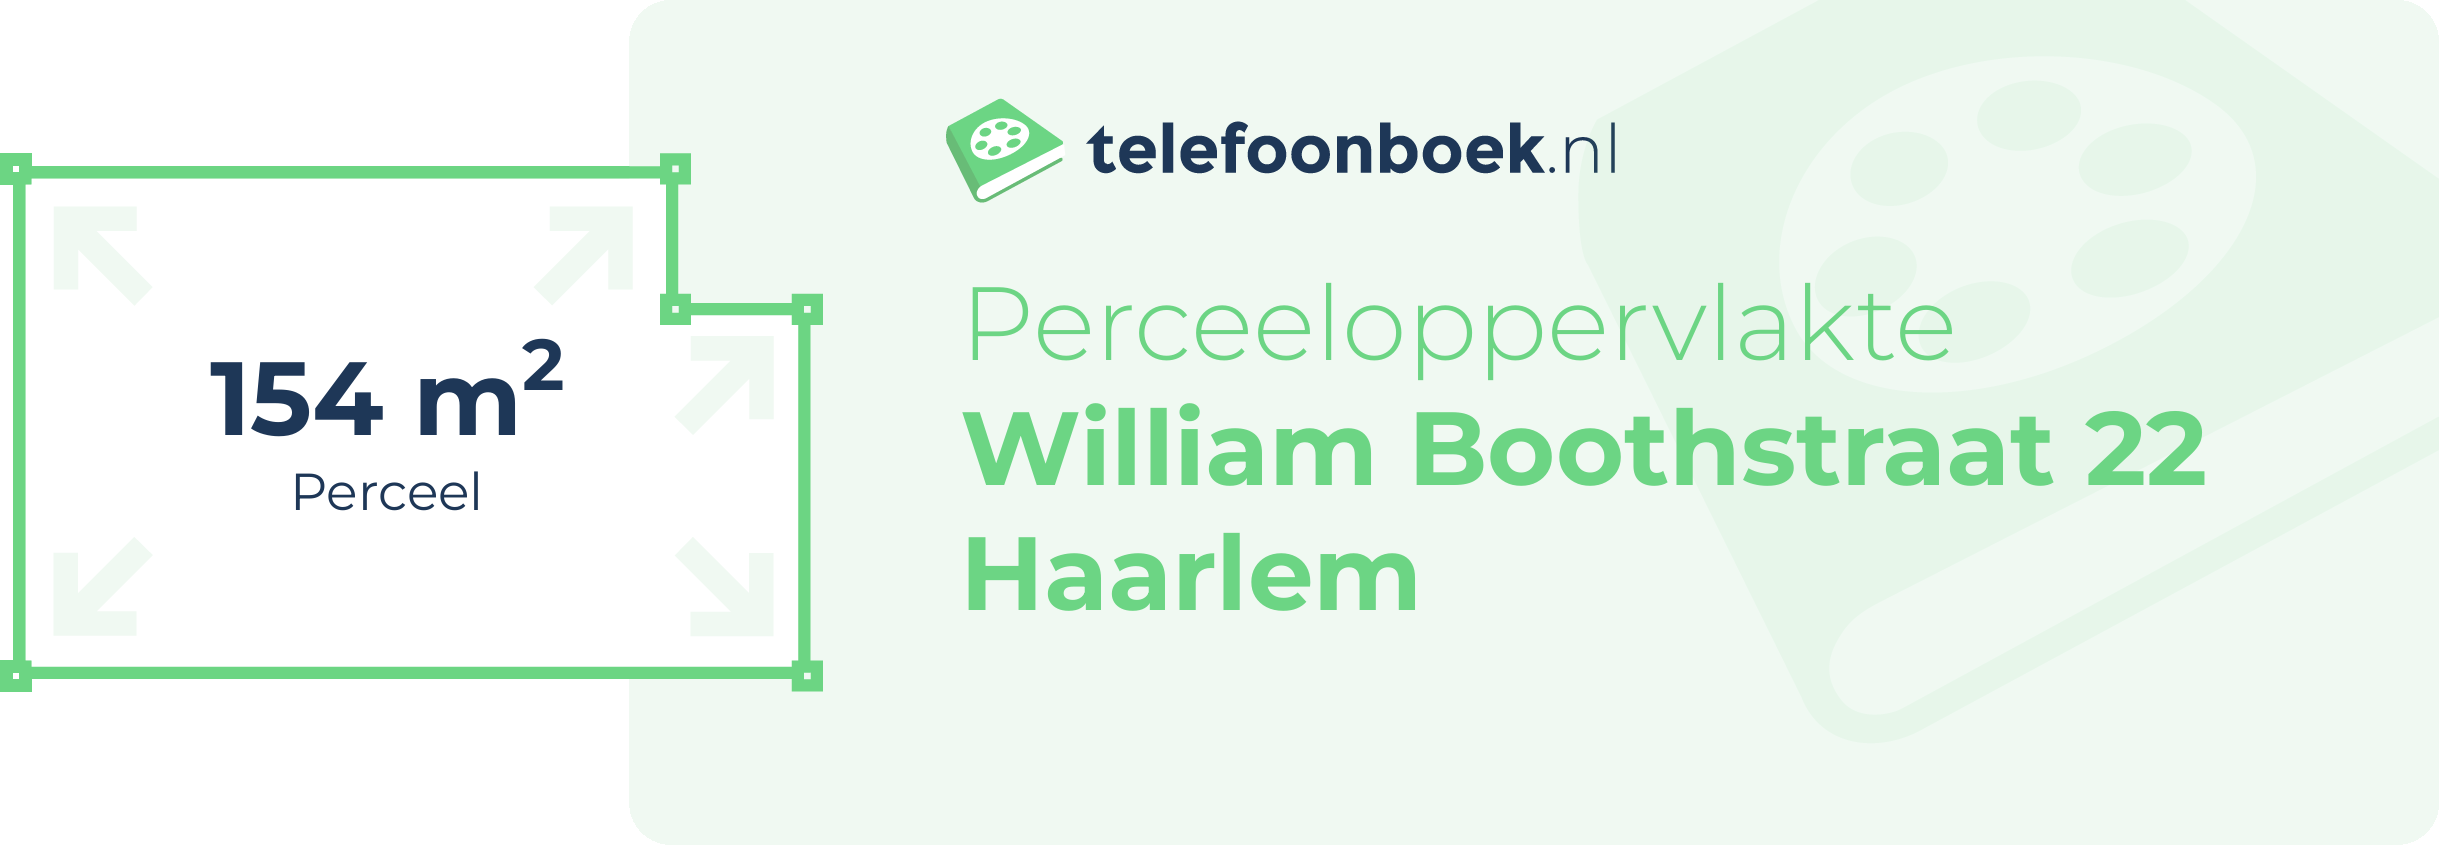 Perceeloppervlakte William Boothstraat 22 Haarlem